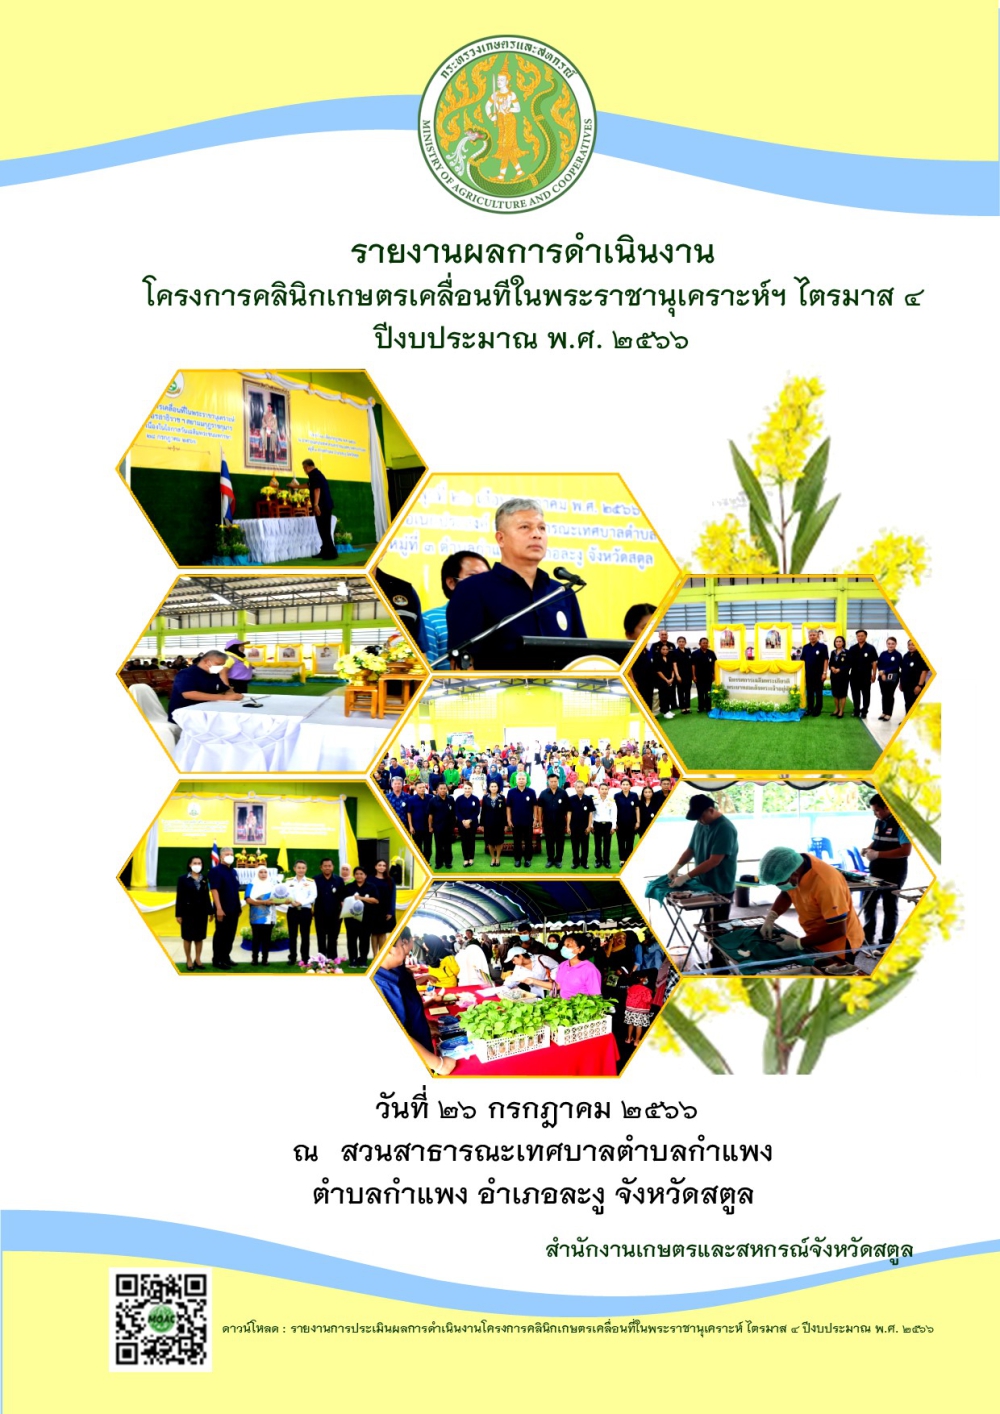 รายงานการประเมินผลการดำเนินงานโครงการคลินิกเกษตรเคลื่อนที่ในพระราชานุเคราะห์ฯ